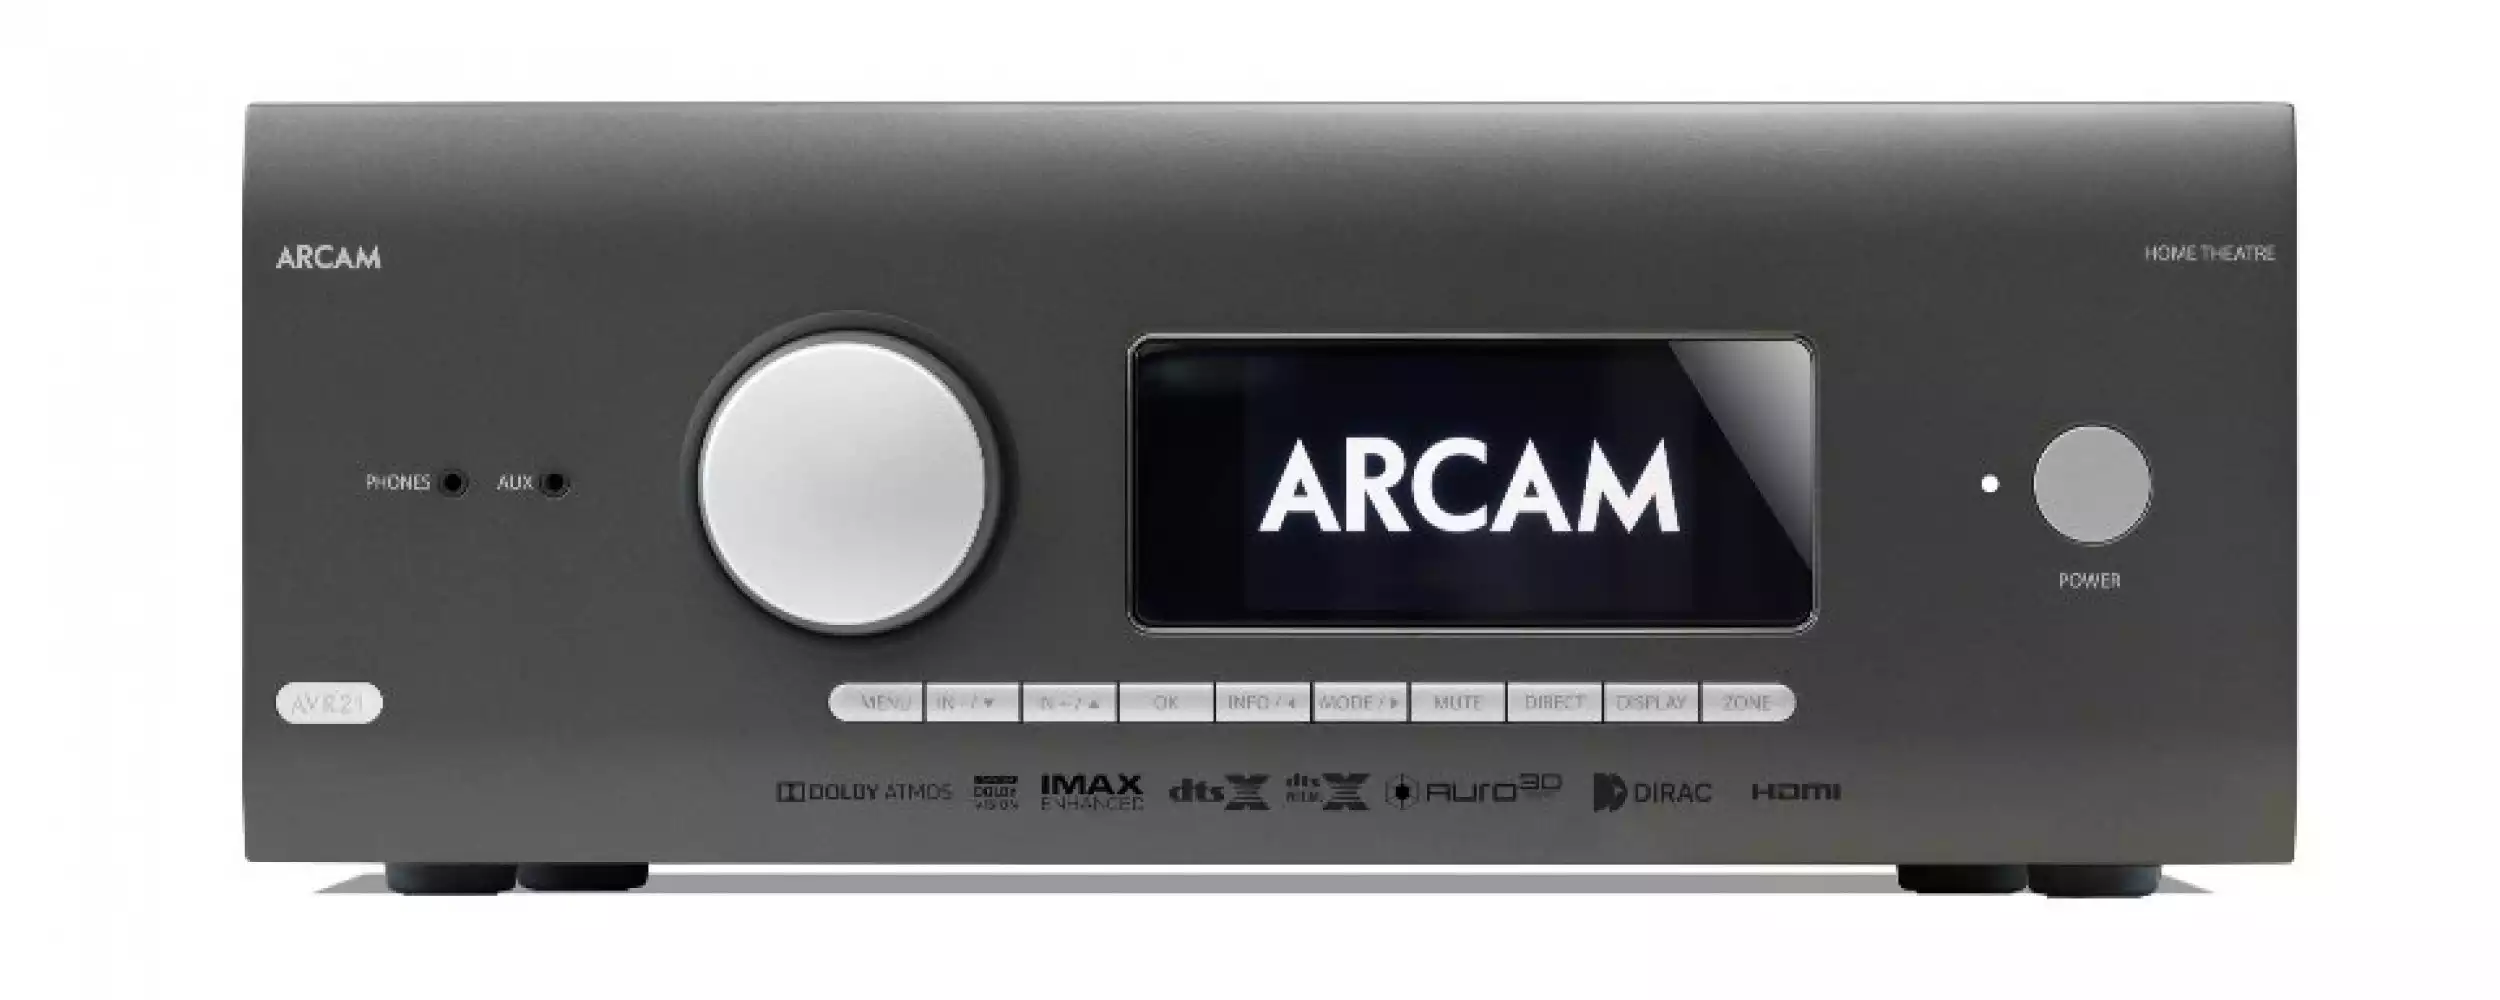 ARCAM AVR21 7.1 AV risiver